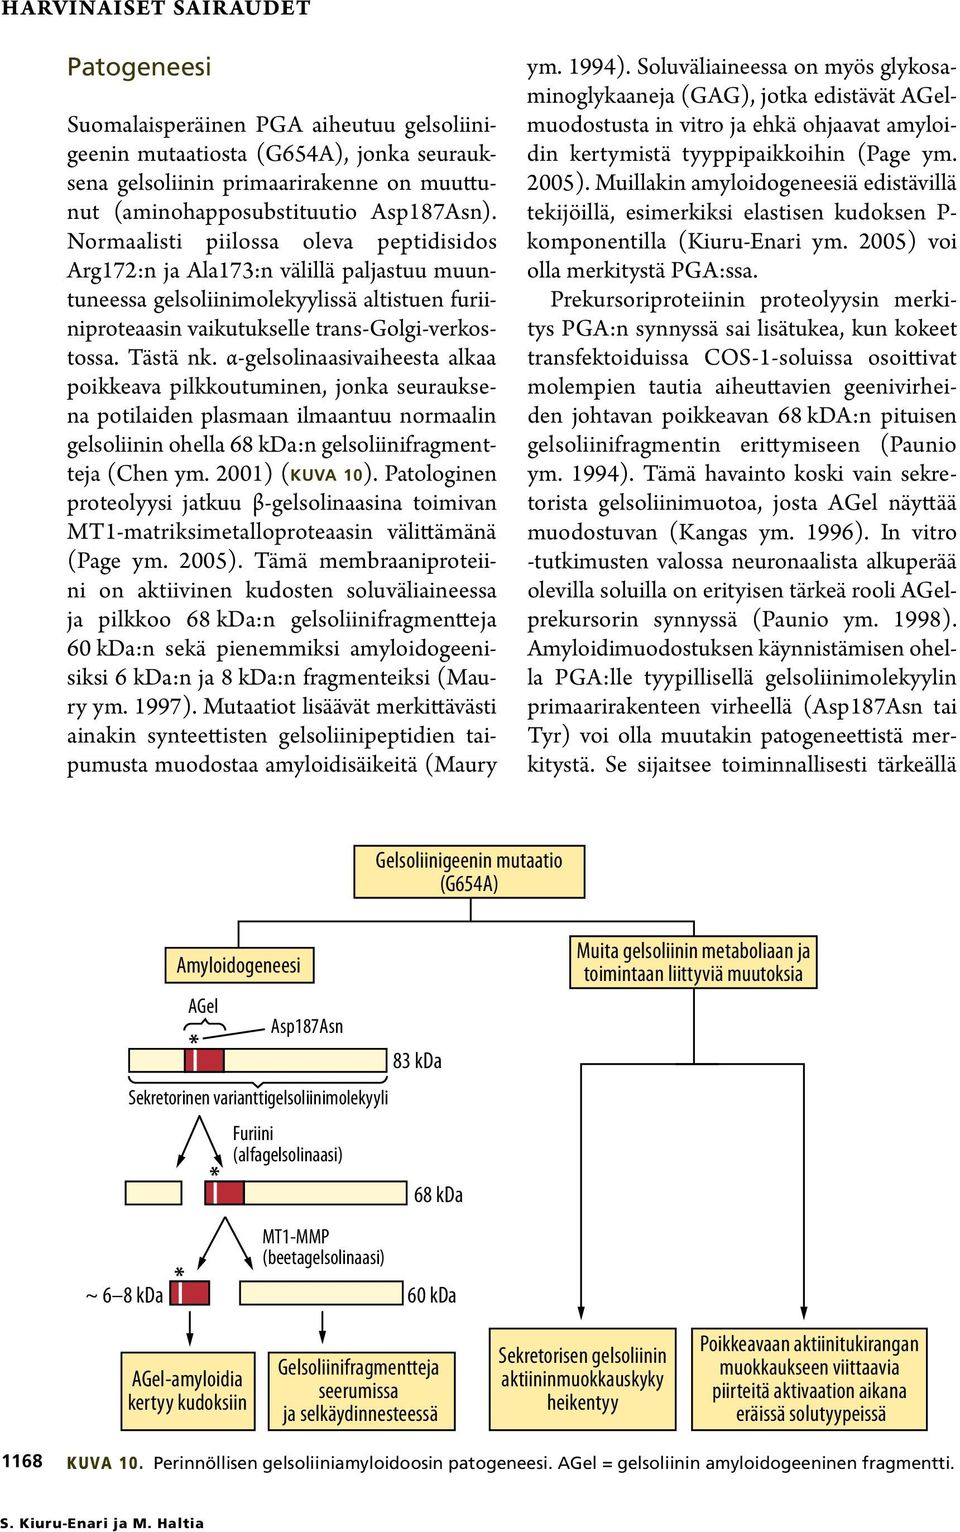 α-gelsolinaasivaiheesta alkaa poikkeava pilkkoutuminen, jonka seurauksena potilaiden plasmaan ilmaantuu normaalin gelsoliinin ohella 68 kda:n gelsoliinifragmentteja (Chen ym. 2001) (kuva 10).